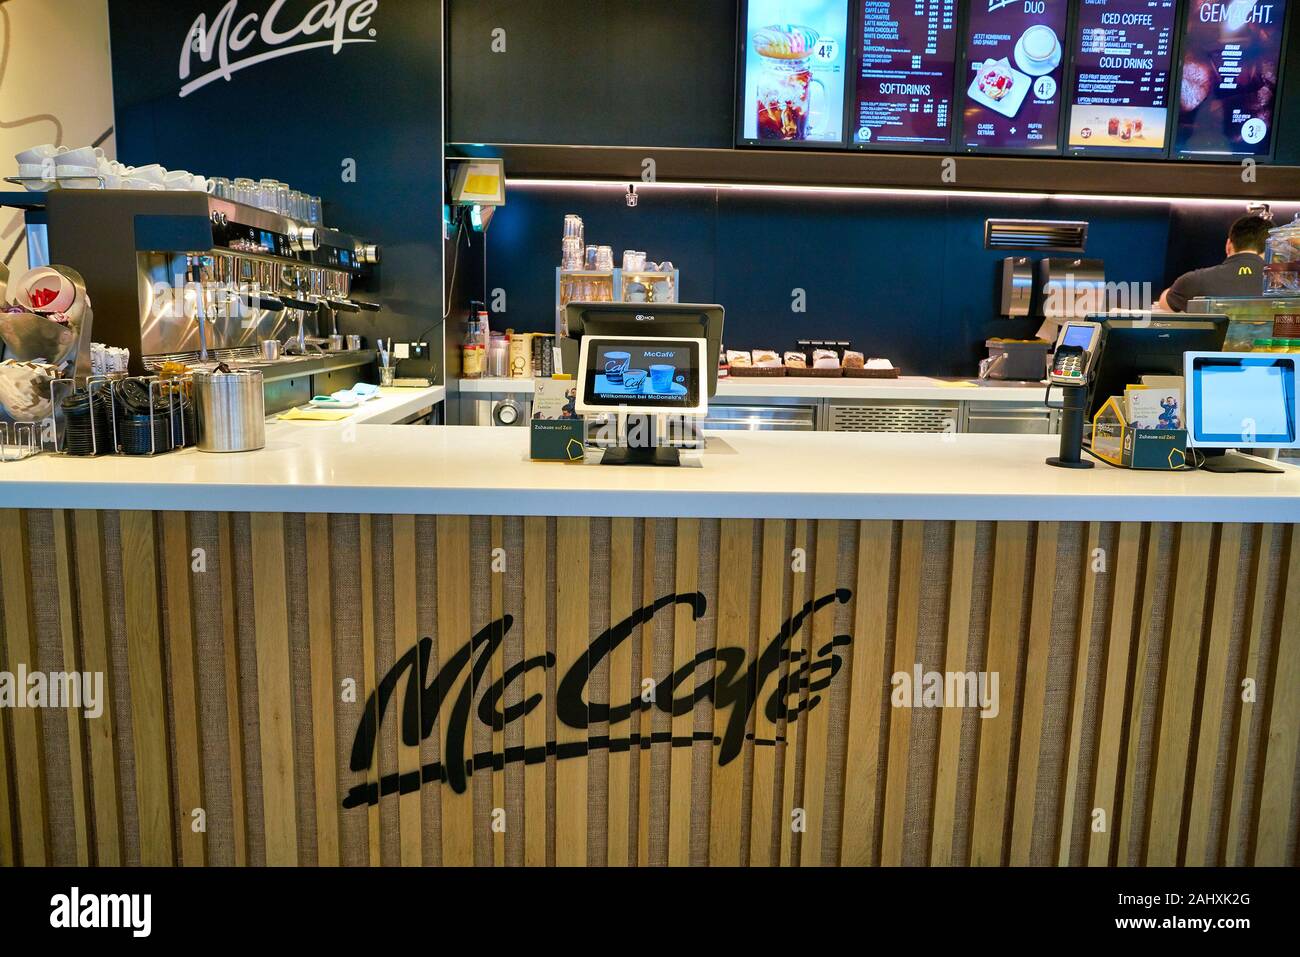 Mcdonalds Cafe Stockfotos Und Bilder Kaufen Seite 5 Alamy